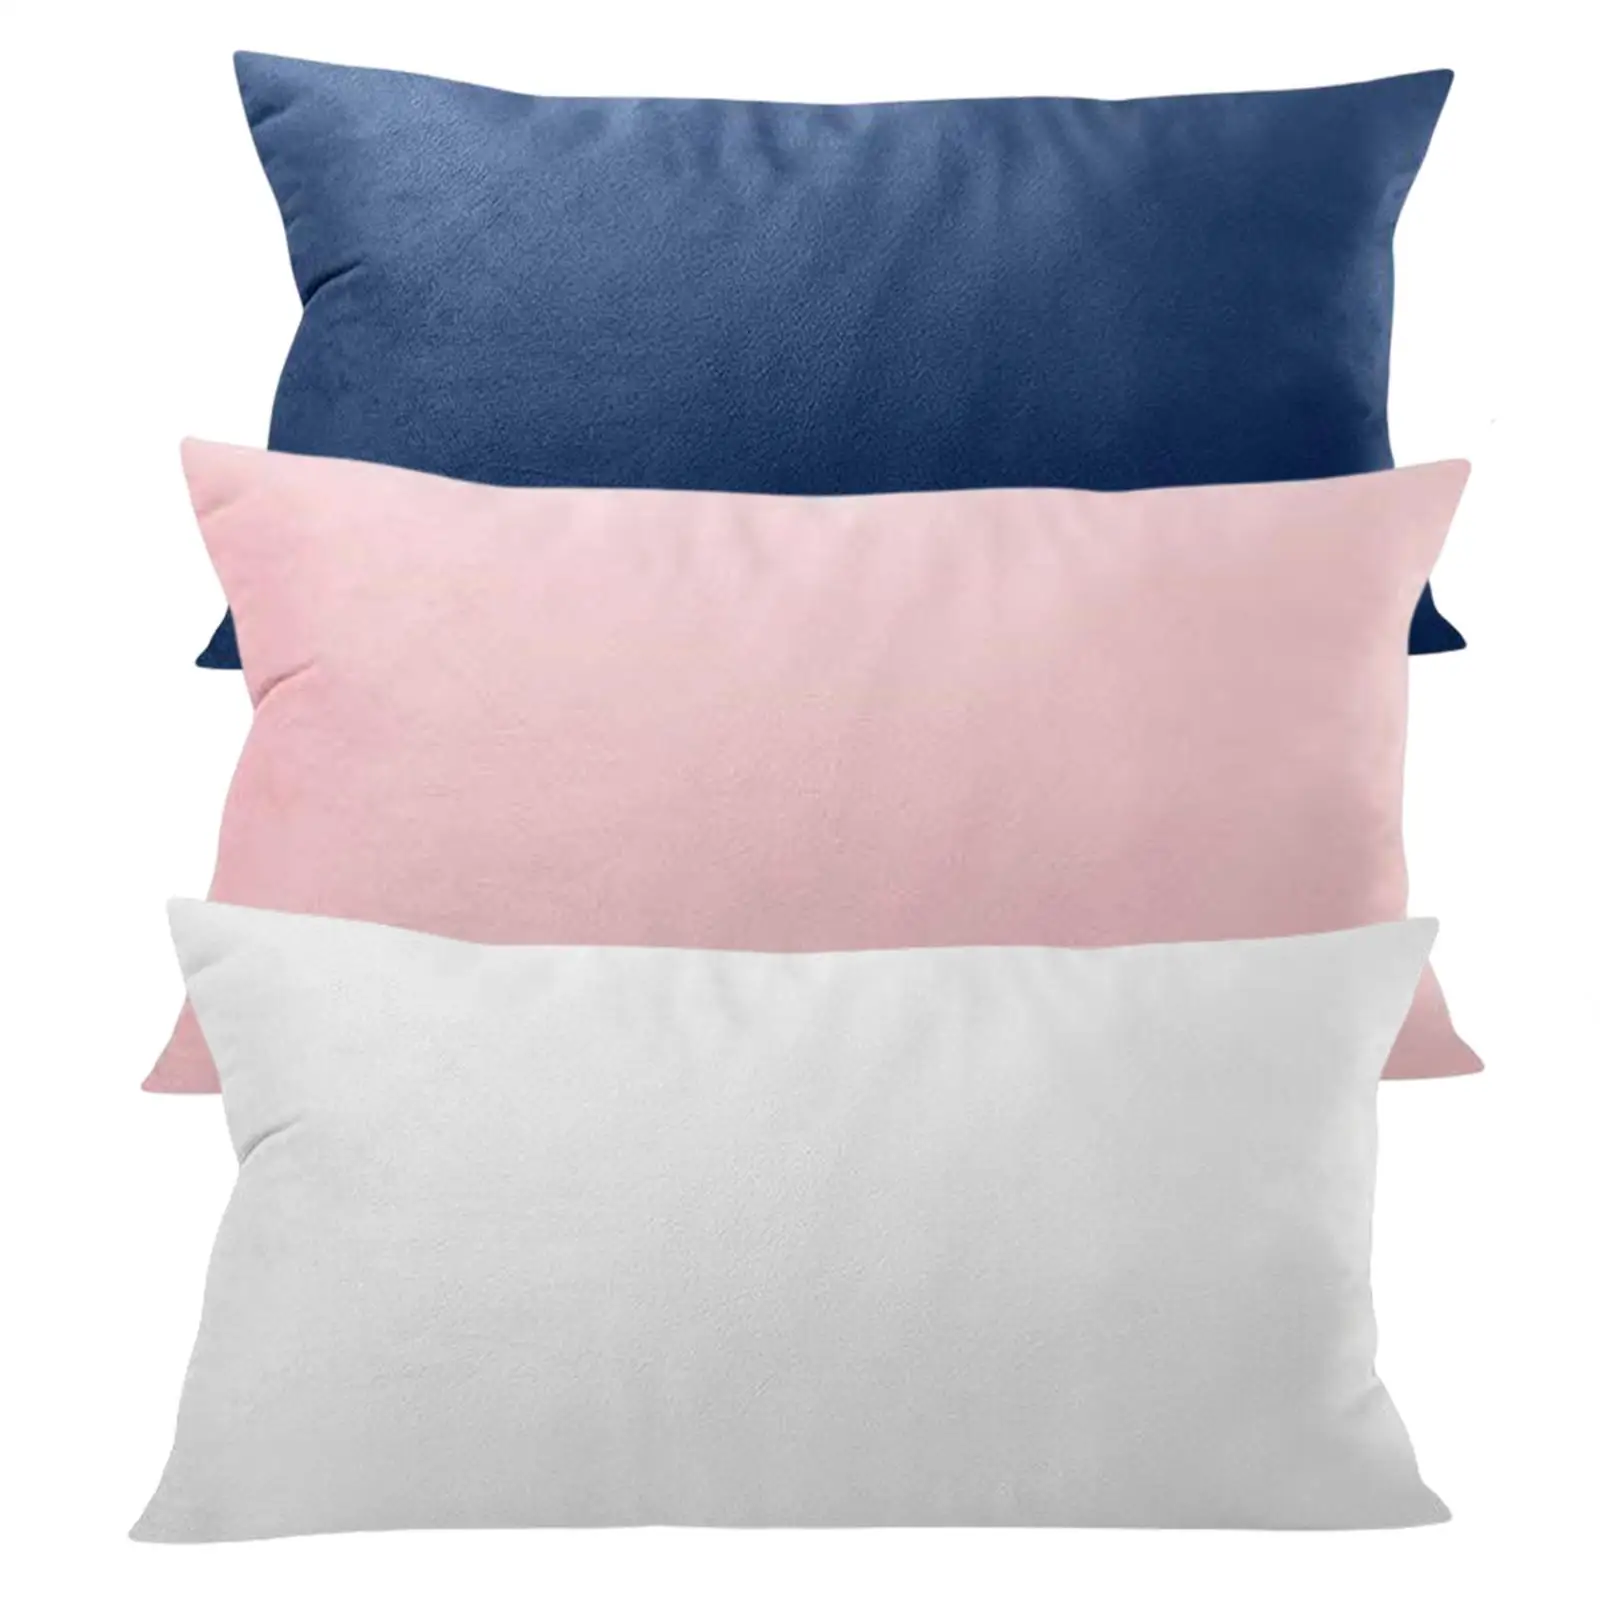 Soft Head Cushion Pillow with pillow Pillow Back Lumbar Pillows for Folding Lounger Lower Back Pain Garden Picnics Headrest